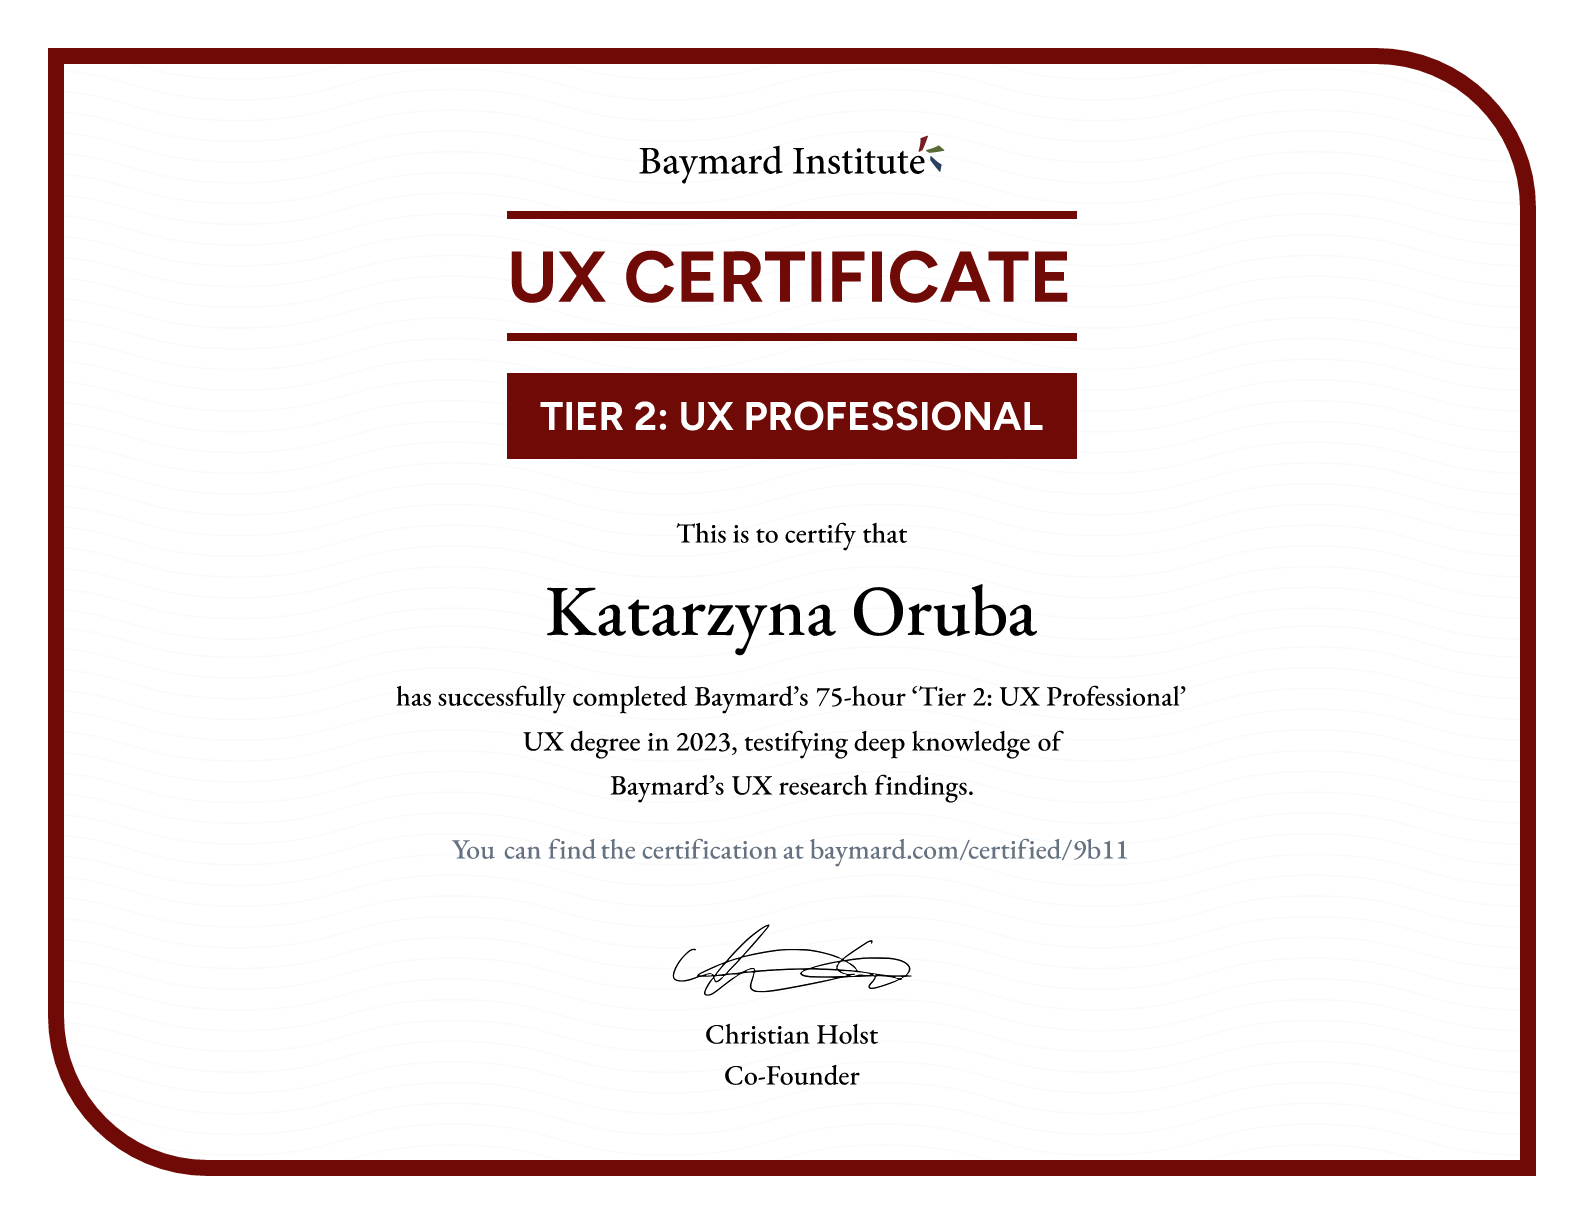 Katarzyna Oruba’s certificate